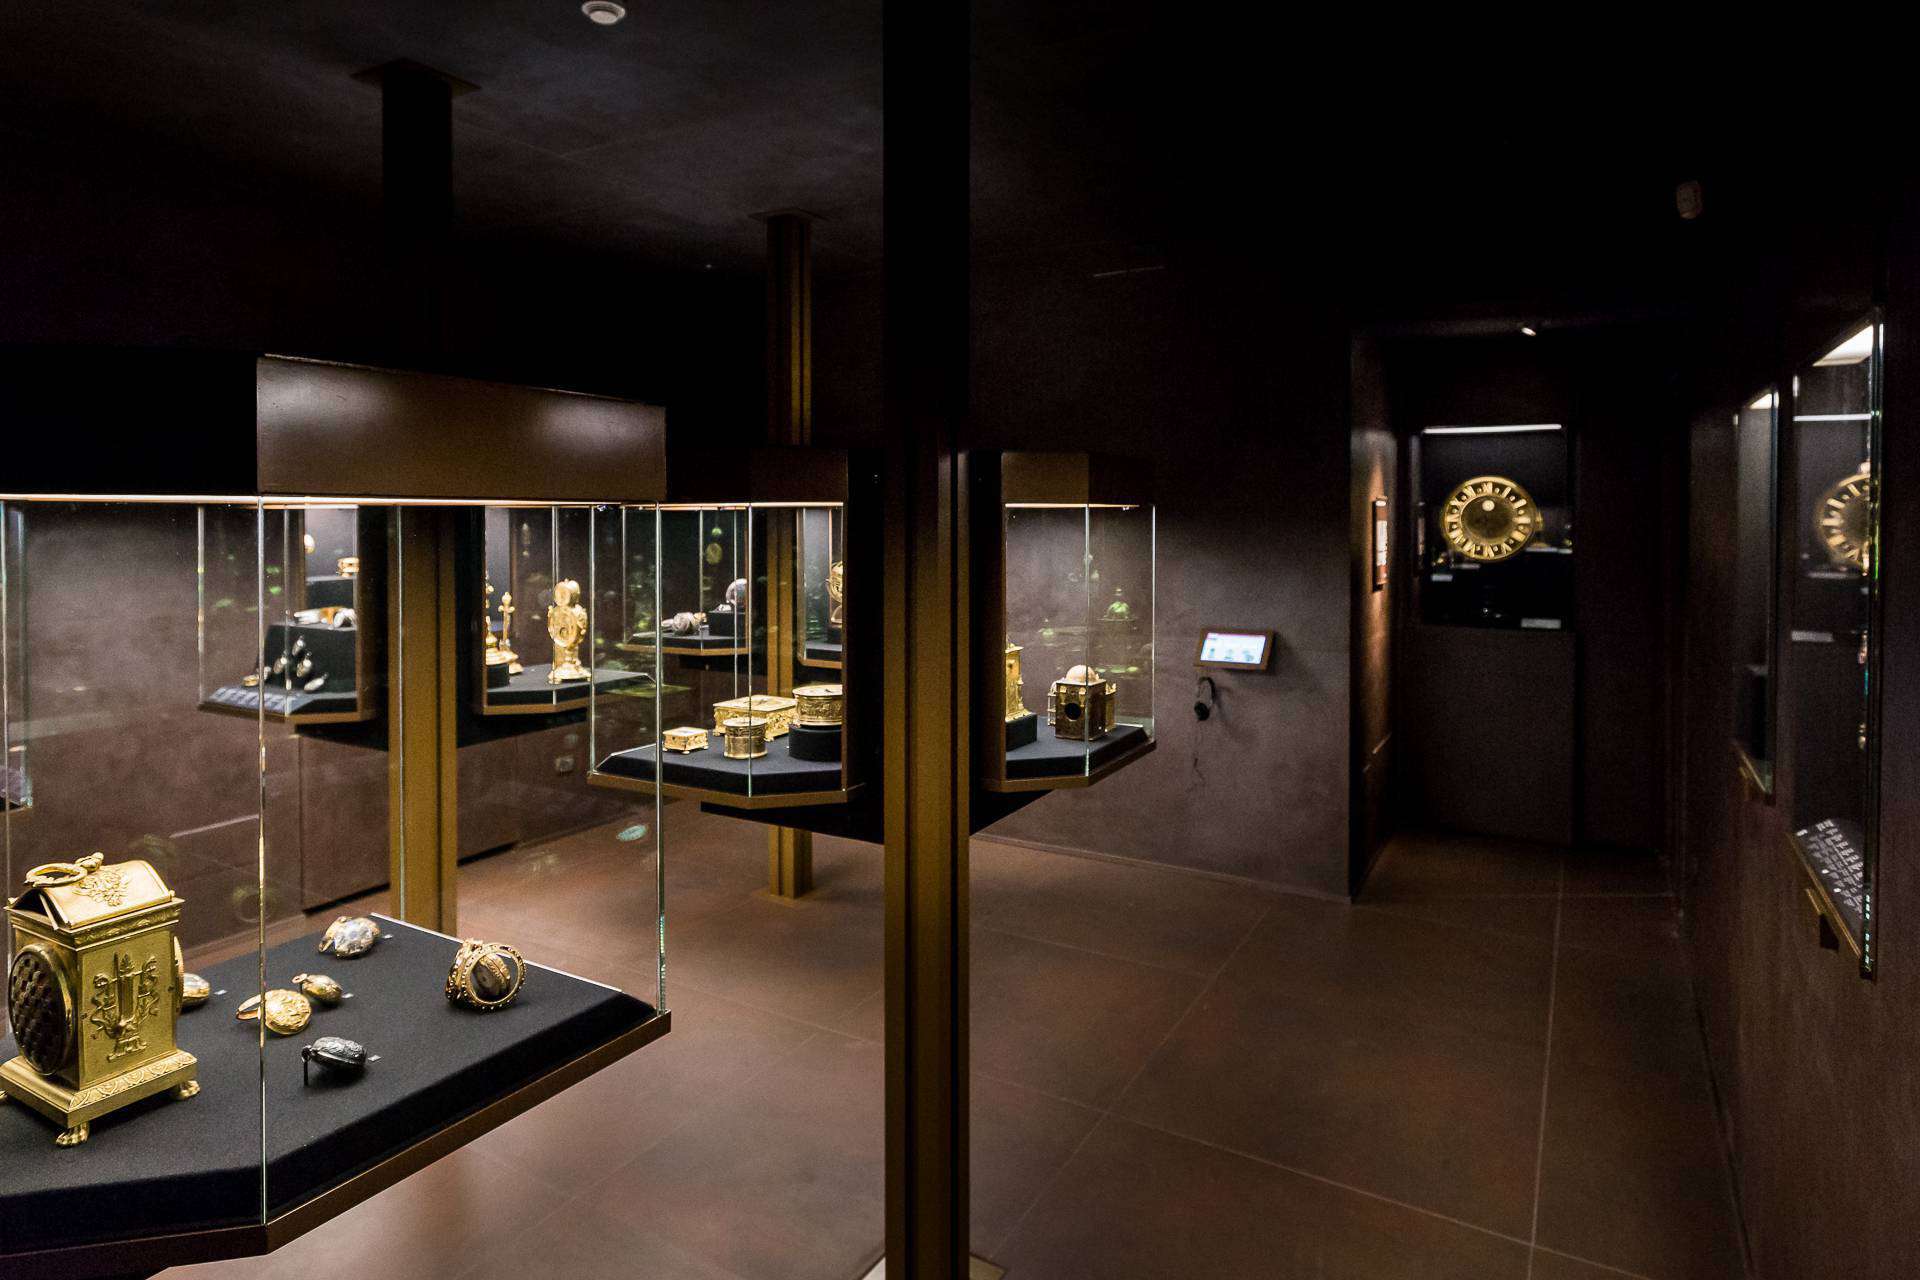 Зал, где представлены различные часы, музей Польди-Пеццоли